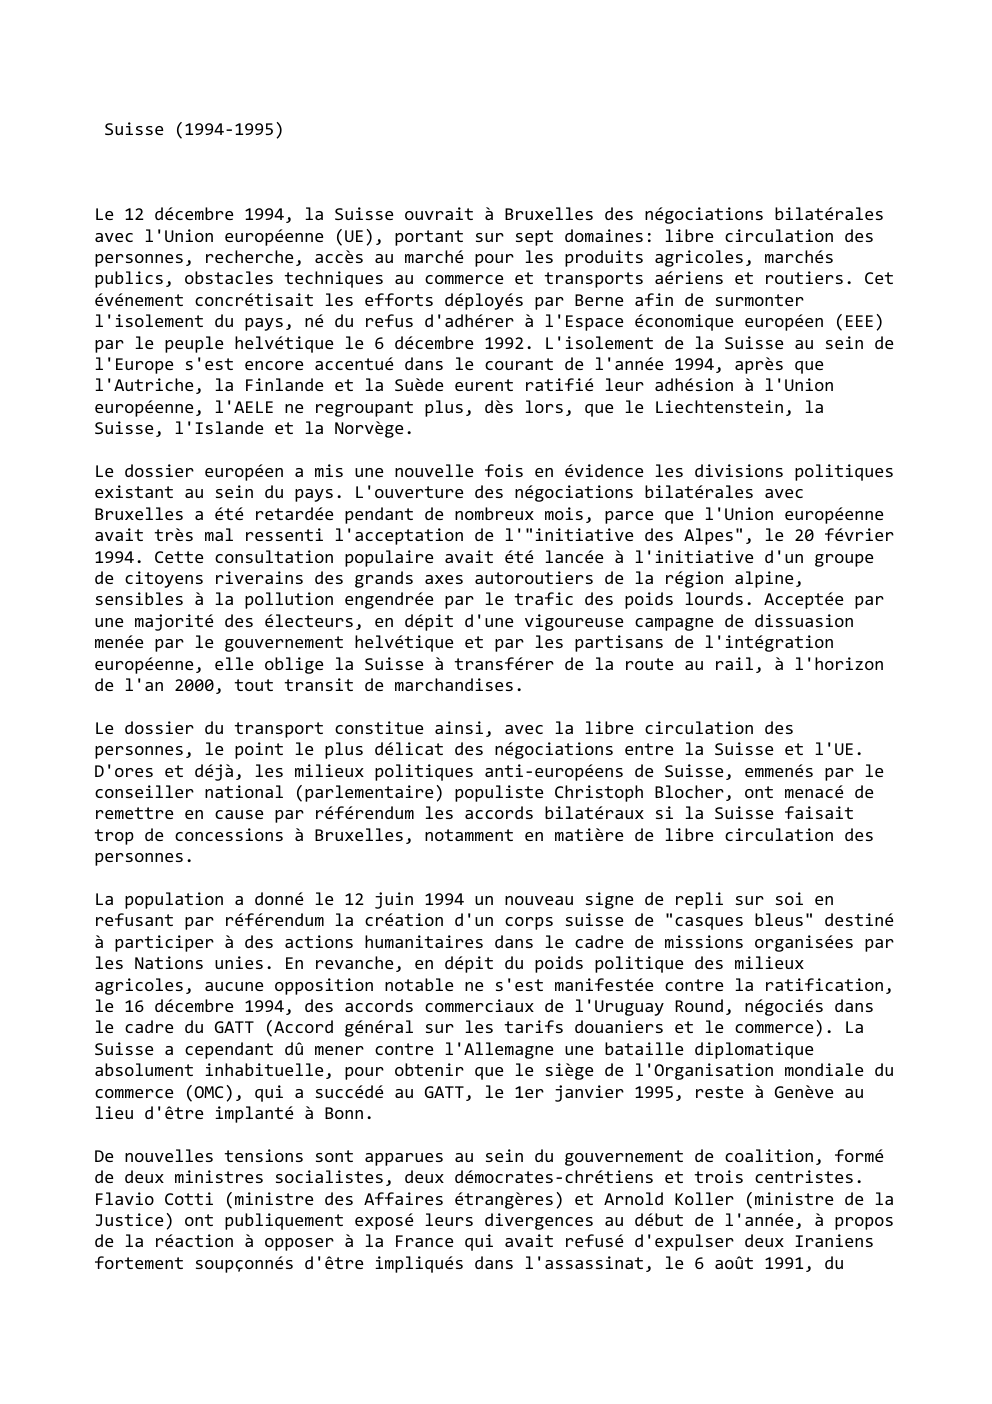 Prévisualisation du document Suisse (1994-1995)

Le 12 décembre 1994, la Suisse ouvrait à Bruxelles des négociations bilatérales
avec l'Union européenne (UE), portant sur...